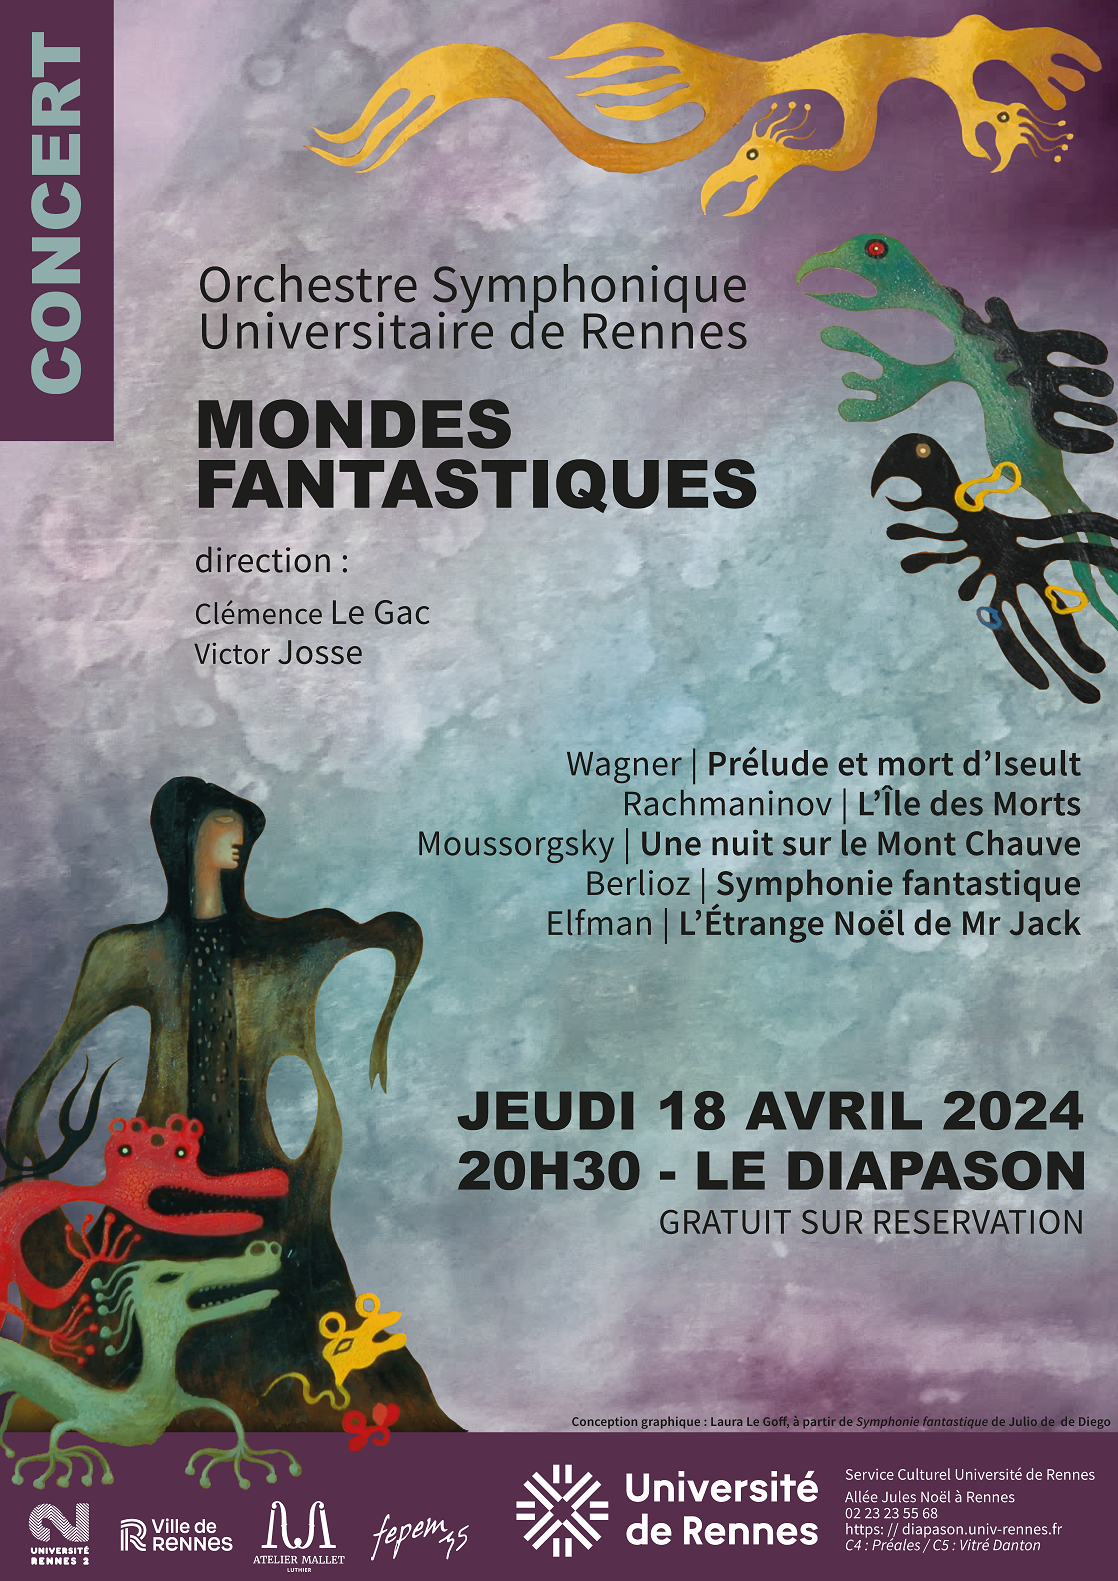 Affiche du concert de l'OSUR "Mondes fantastiques" au Diapason le 18 avril 2024 à 20h30